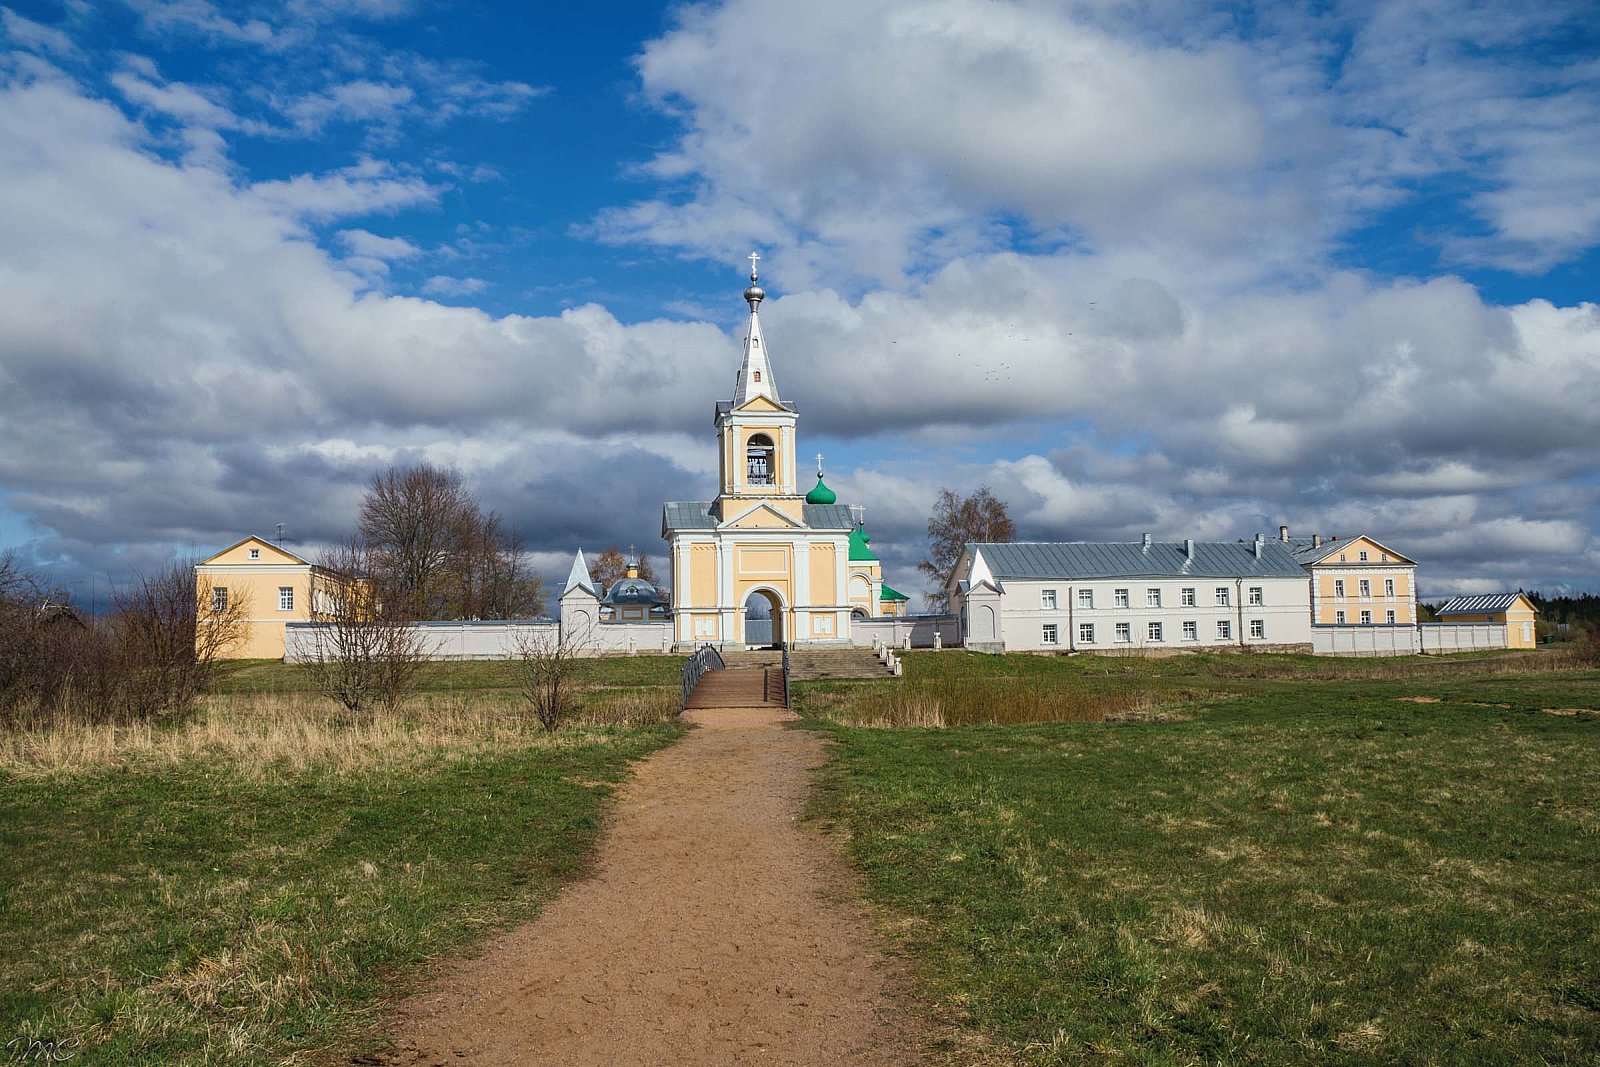 Введено-Оятский женский монастырь - Лодейнопольский район